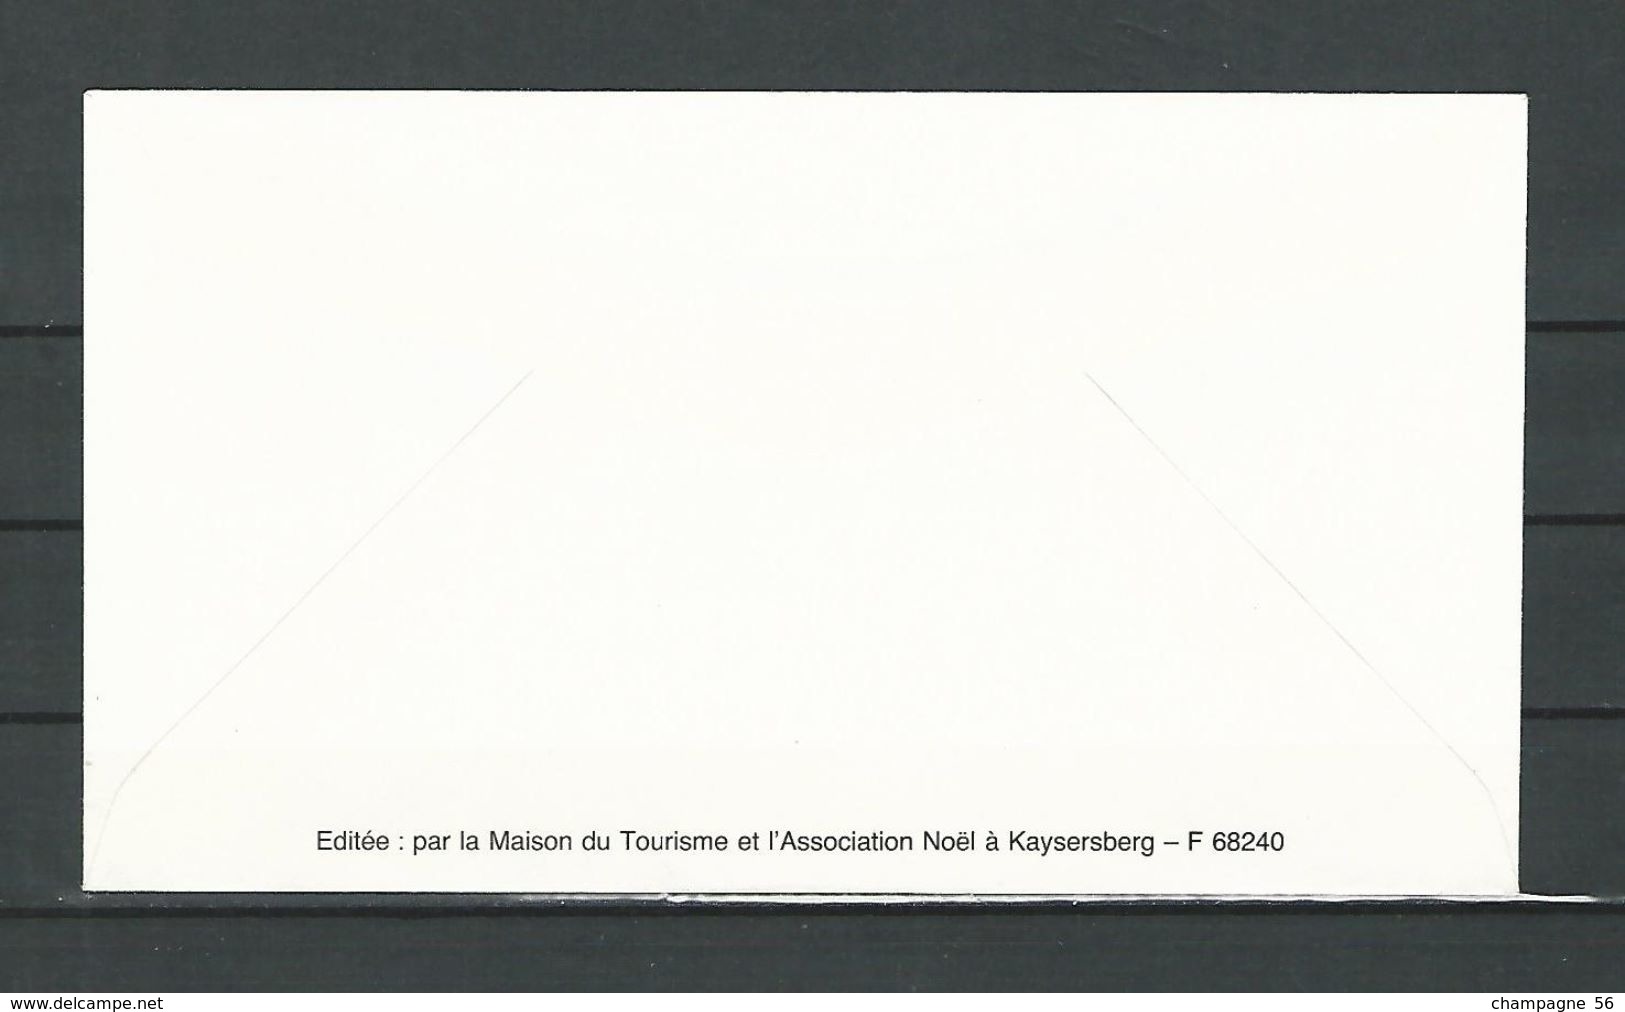 VARIÉTÉS FRANCE ALSACE Noël à KAYSERSBERG 6 enveloppe 1991 /1992 /1993  /1994 /1995 /1996 /  noël oblitérés